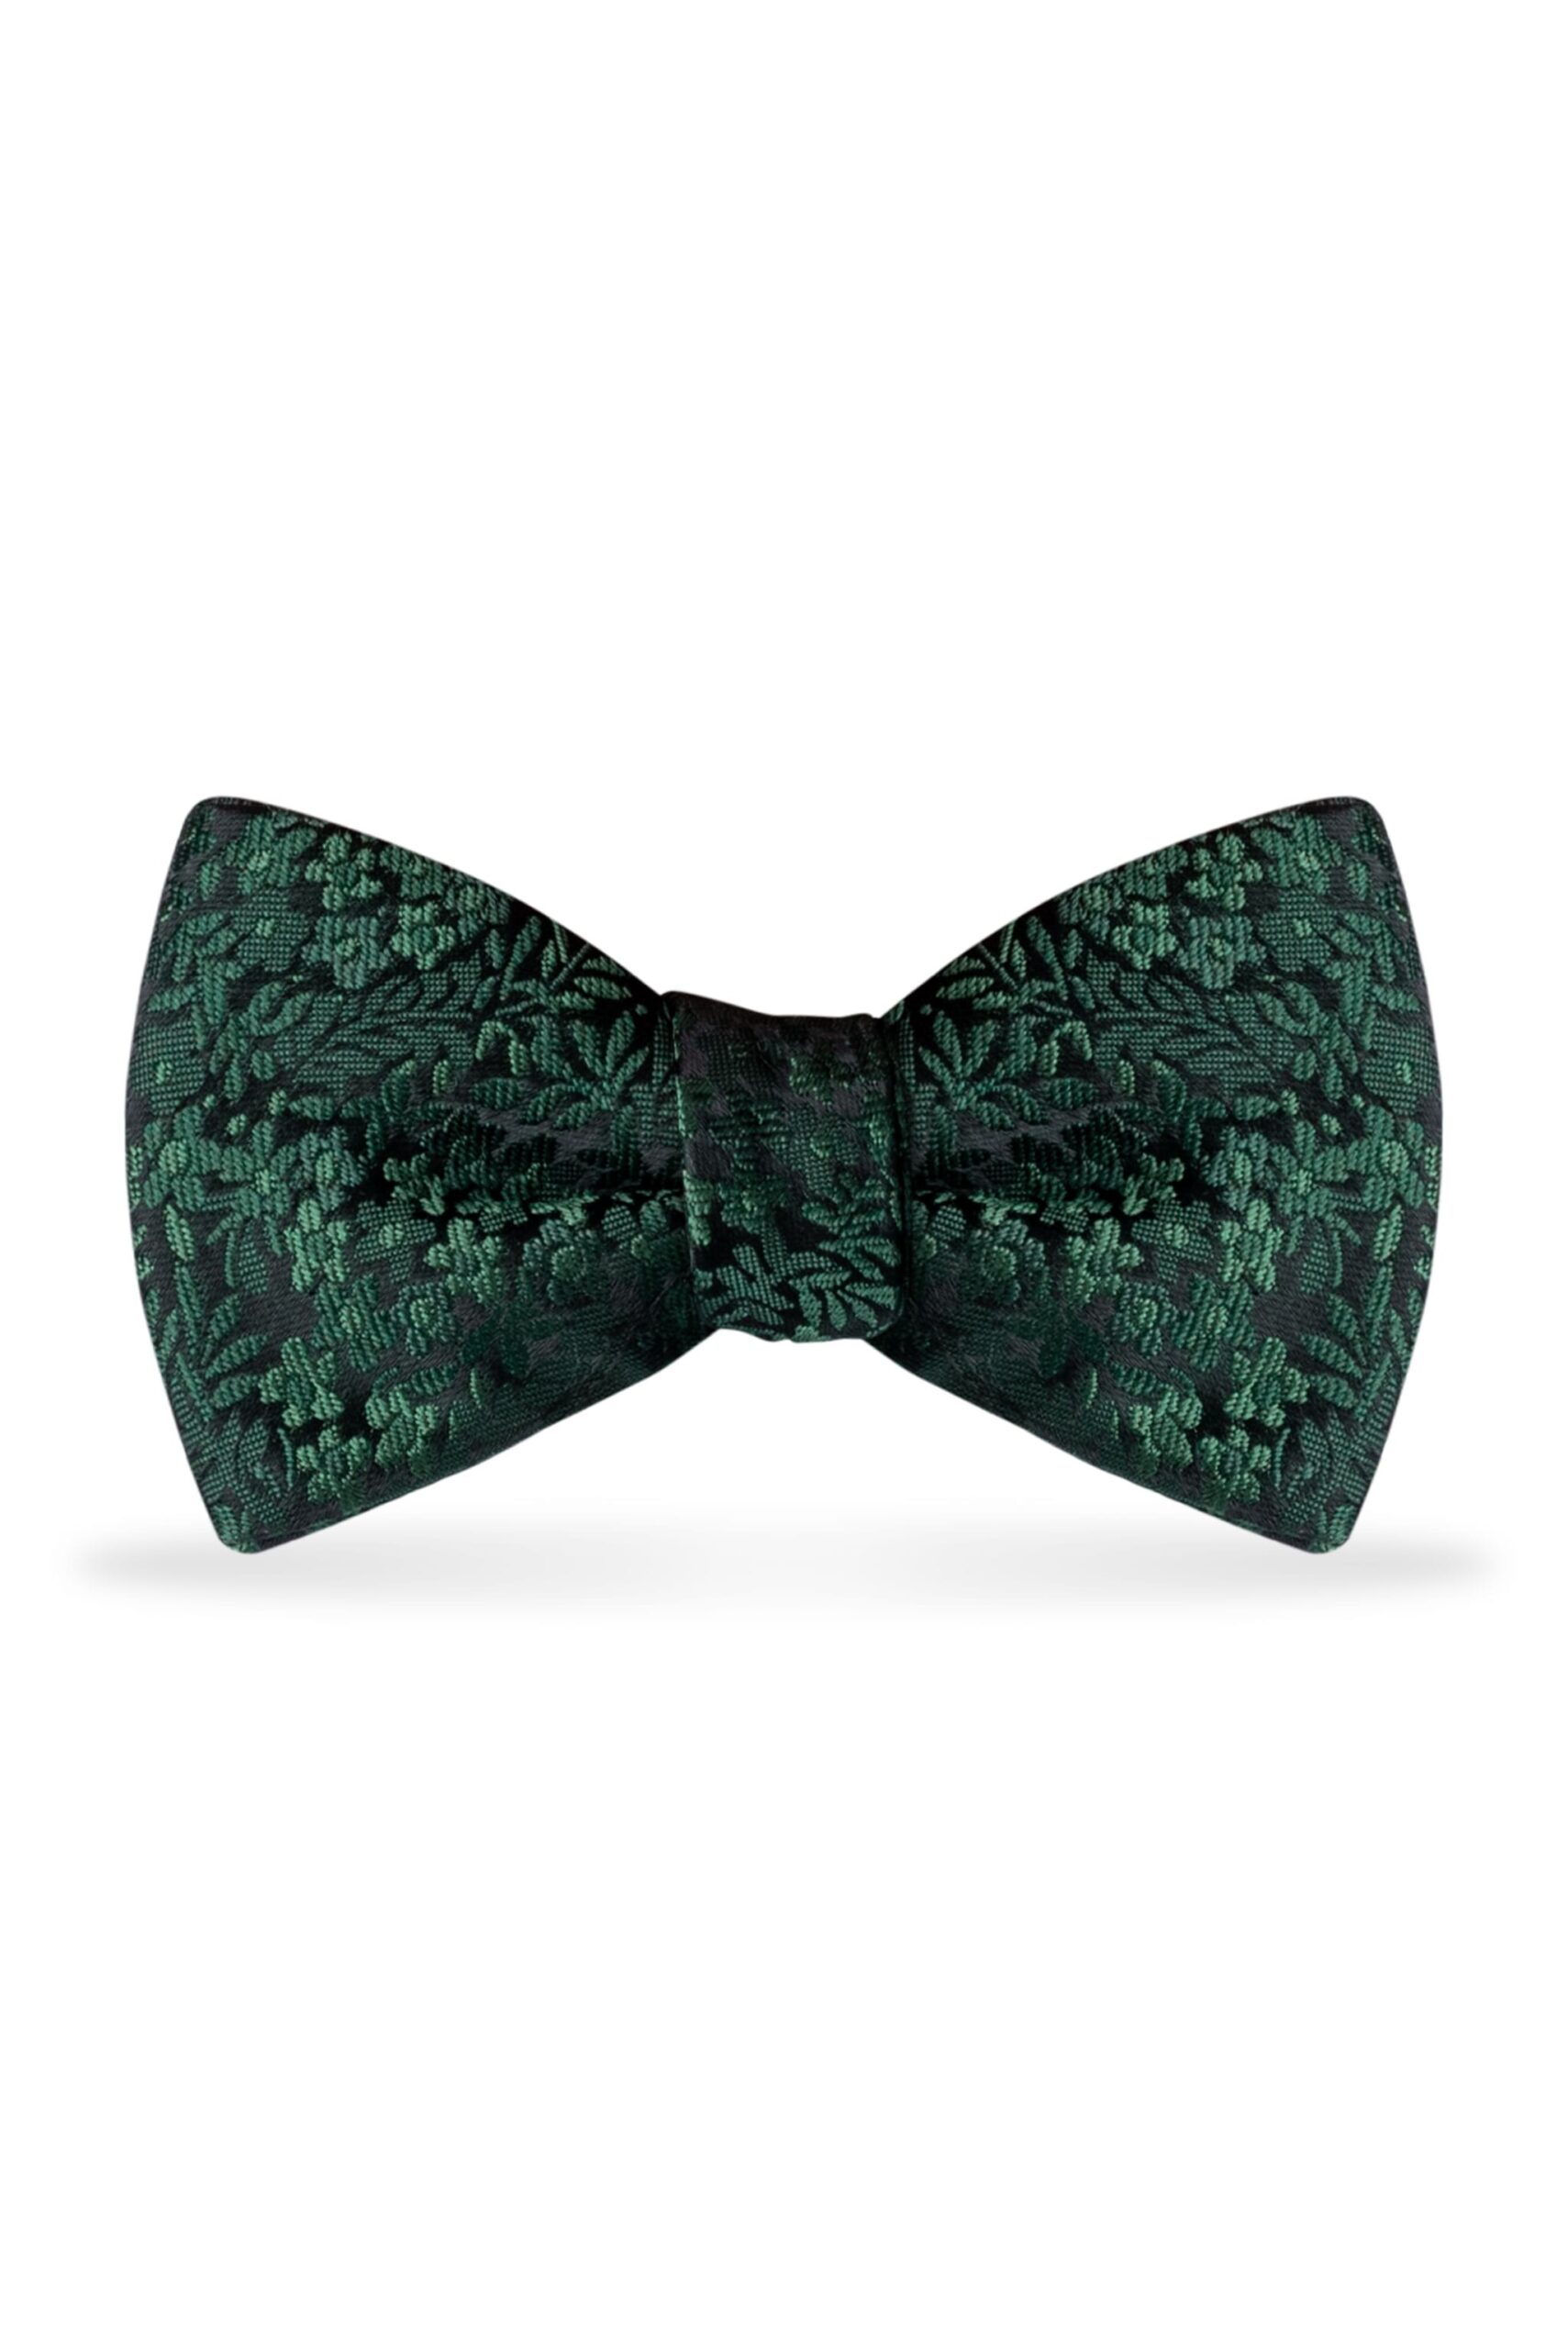 Floral Dark Green Bow Tie